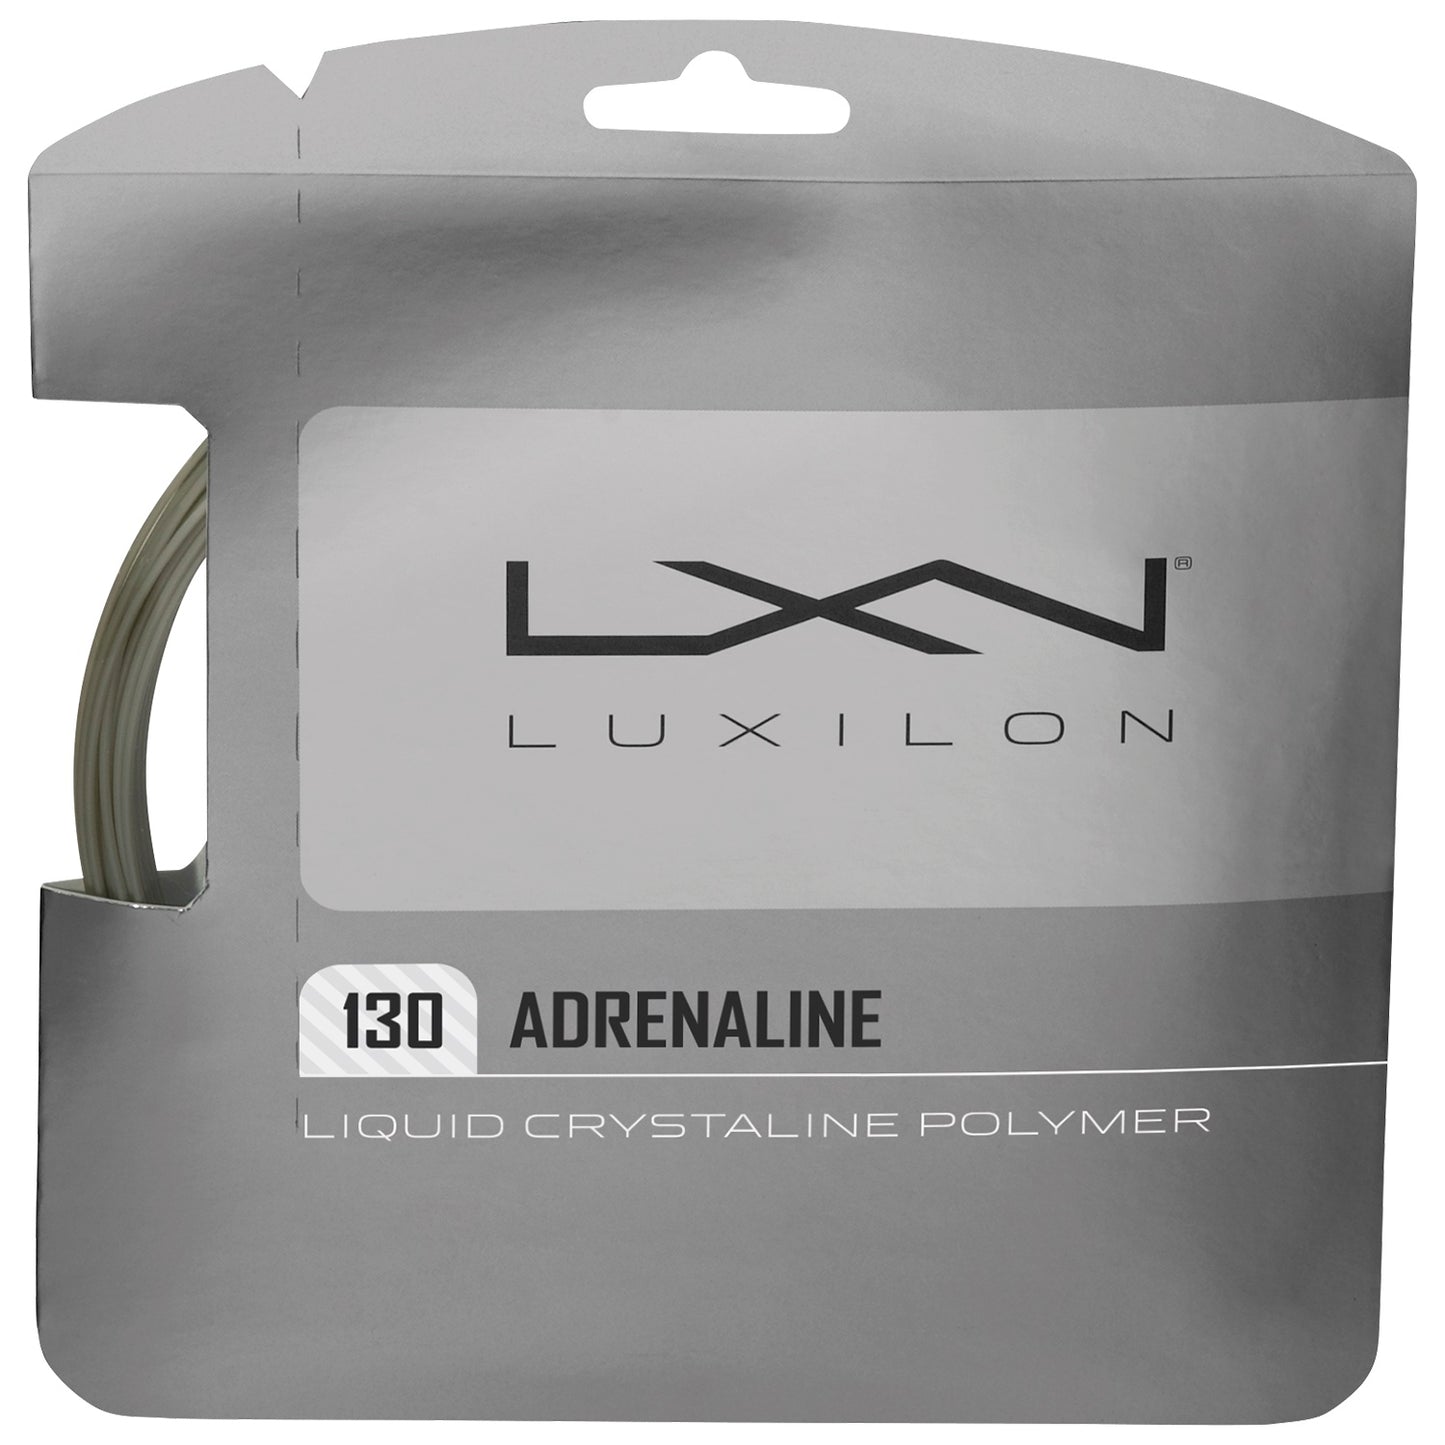 Luxilon Adrenaline 12m/40ft